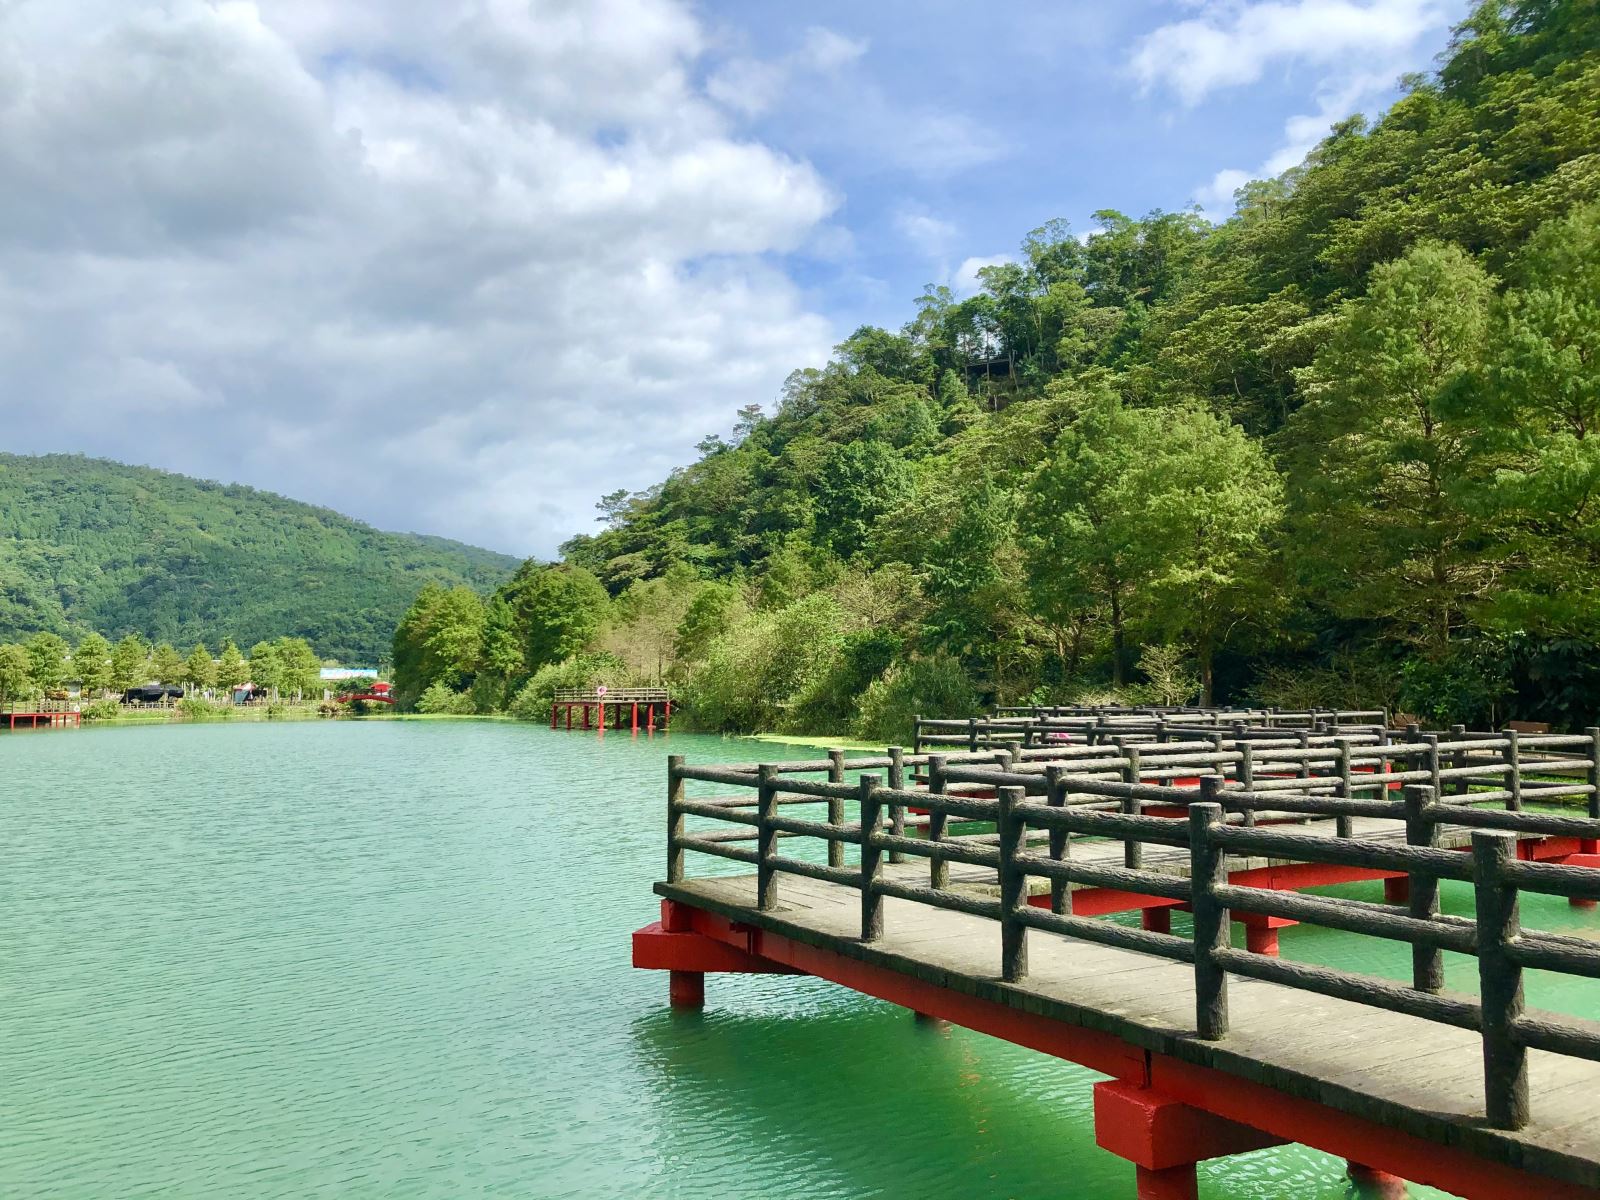 집게를 즐길 수있는 성지 인 "Wanglongpi"에있는 Jiuqu 다리를 통해 방문객은 호수로 걸어 들어갈 수 있습니다.